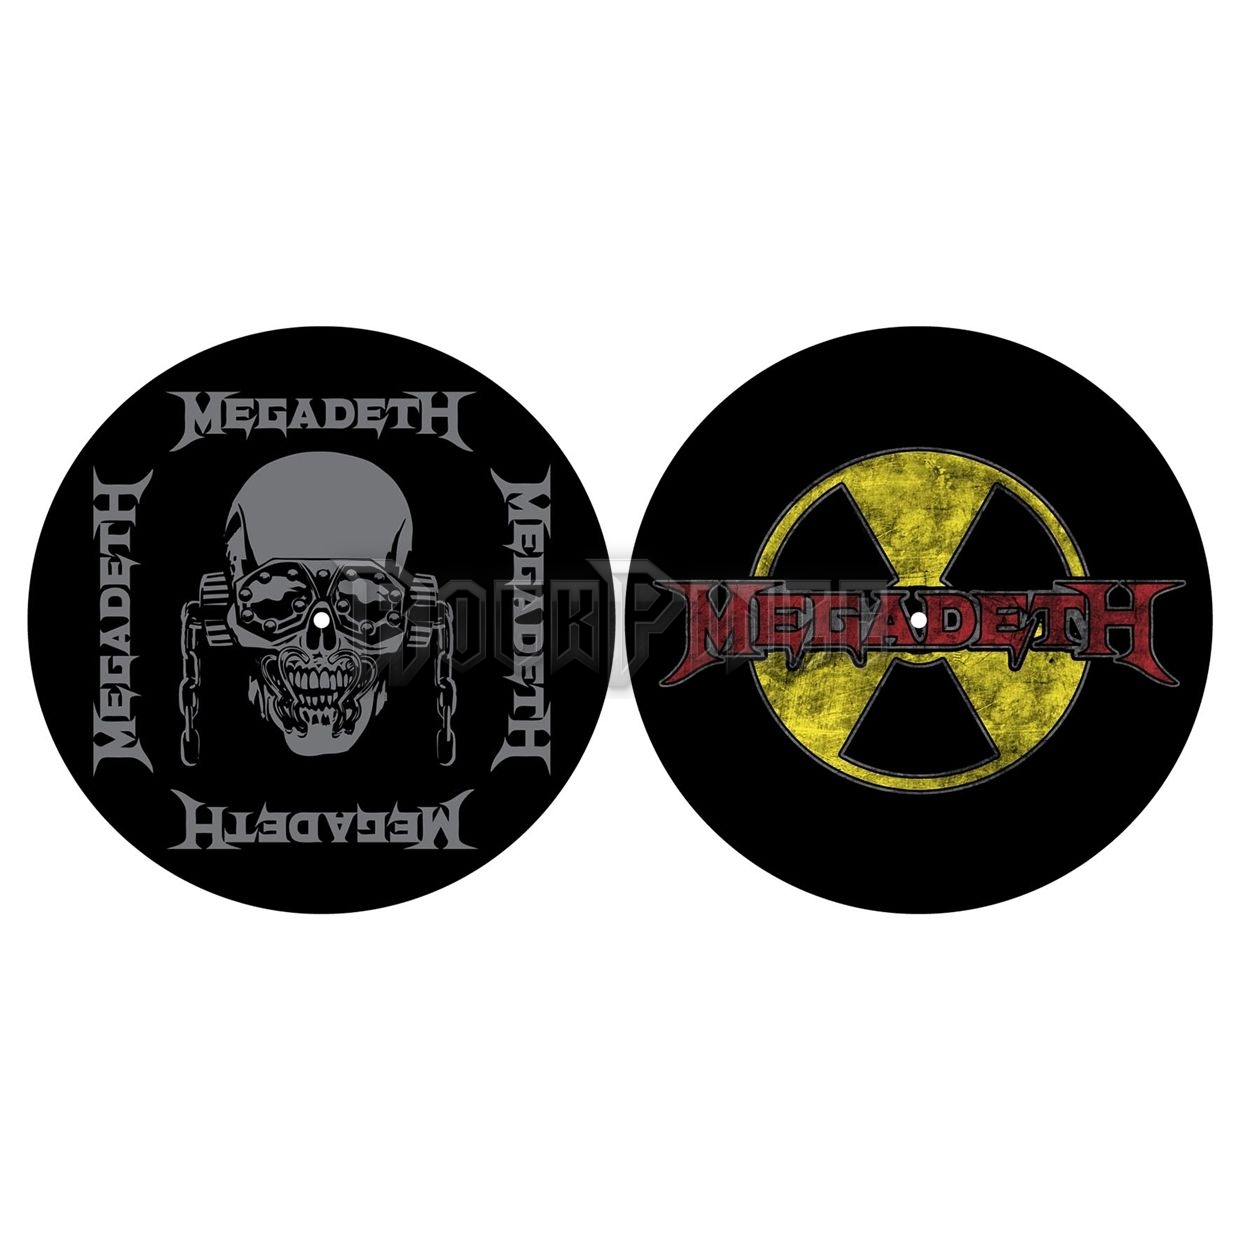 Megadeth - Radioactive - slipmat szett - SM064